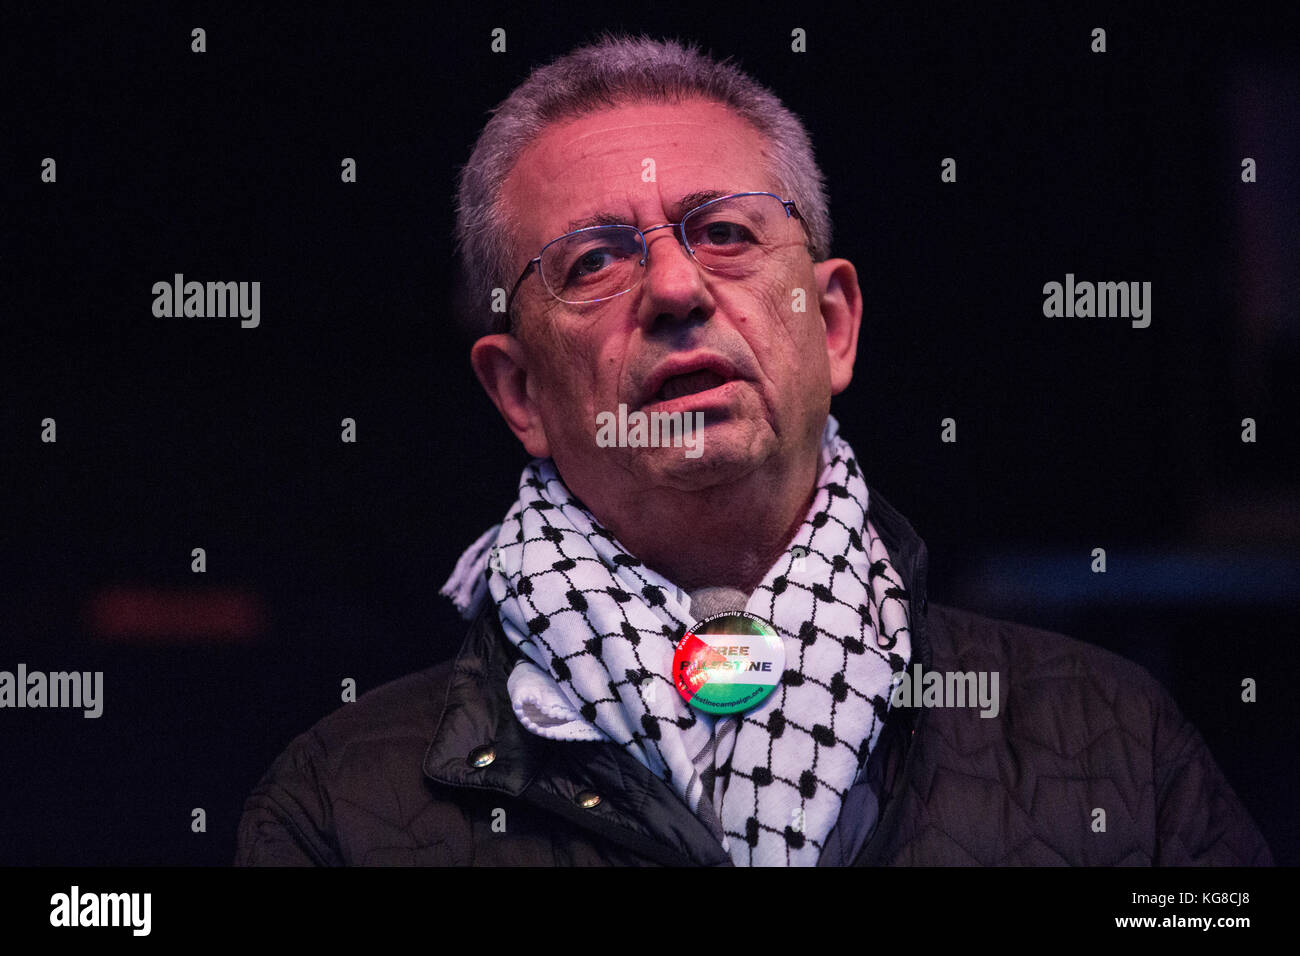 Londres, Royaume-Uni. 4 novembre, 2017. Le Dr Mustafa Barghouti, homme politique palestinien et secrétaire général de l'initiative nationale palestinienne, chante le long d'une interprétation de "awtini' (ma patrie) dirigé par reem kelani, musicien et chanteur palestinien britannique, en place du parlement après une marche pour réclamer la justice et l'égalité des droits pour les palestiniens. crédit : mark kerrison/Alamy live news Banque D'Images